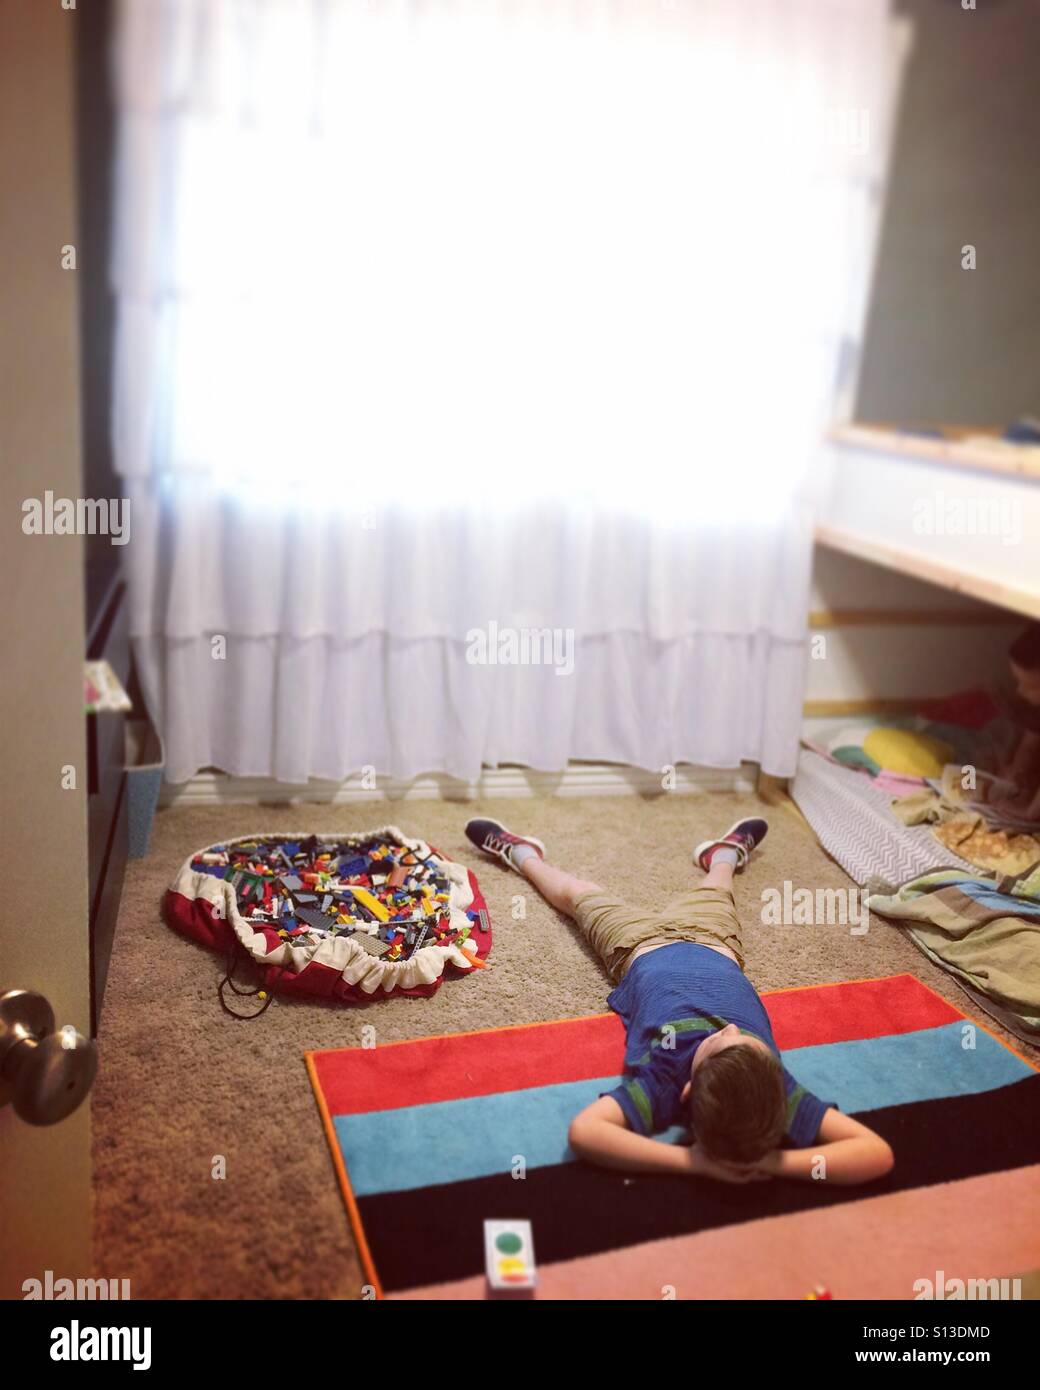 Garçon couché sur un tapis coloré dans une chambre à coucher Banque D'Images